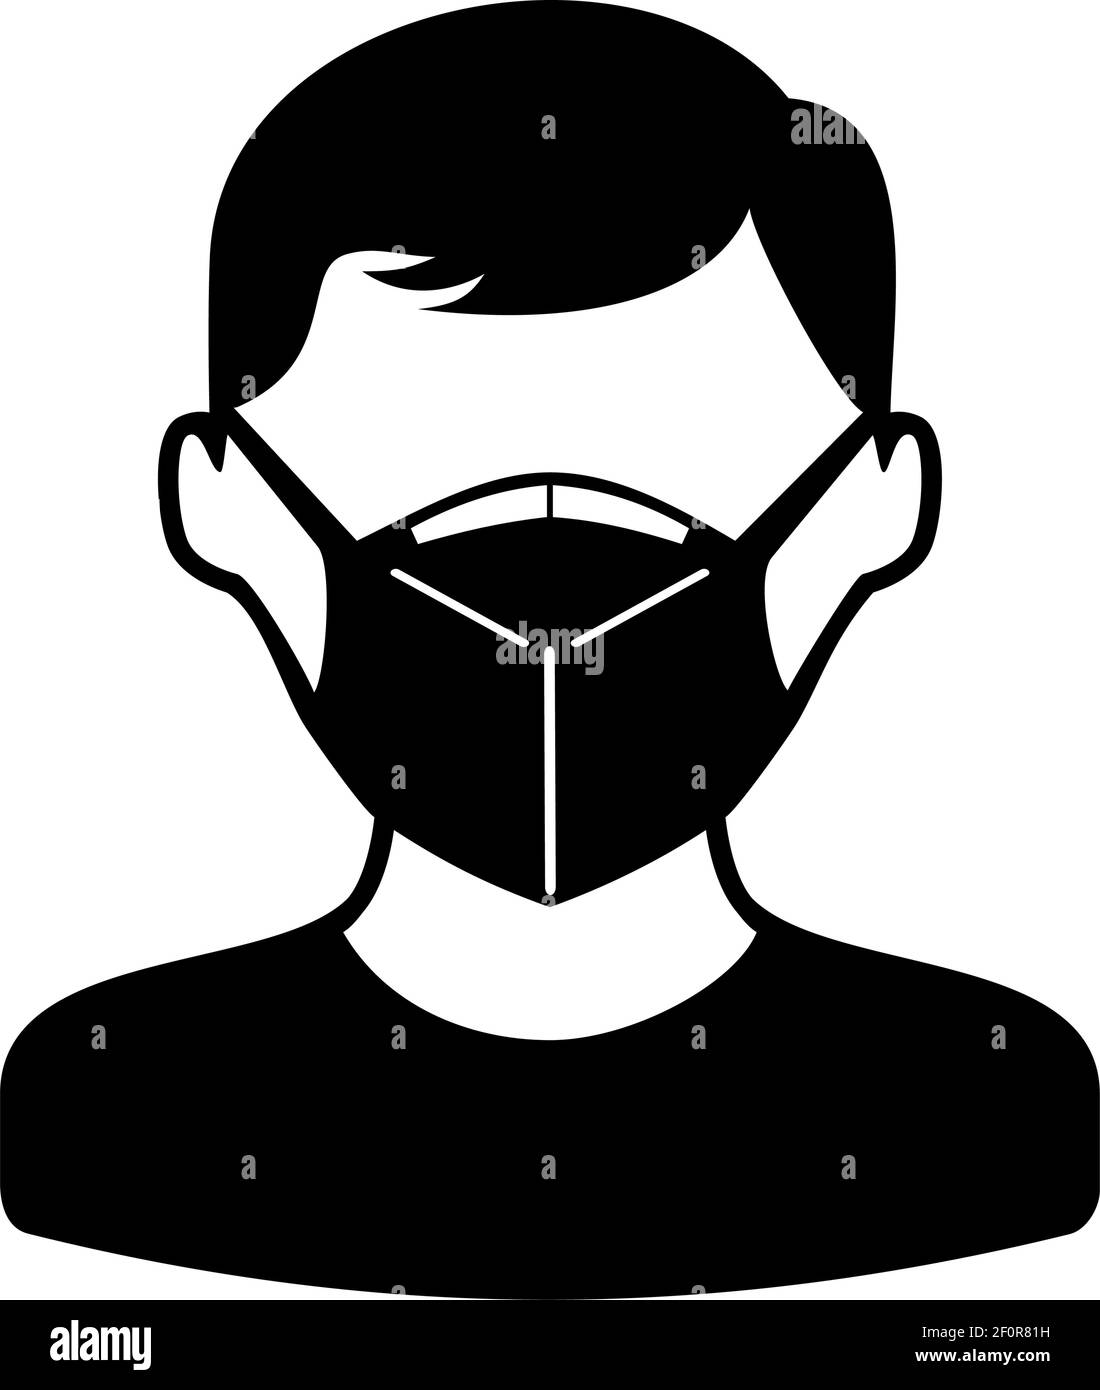 Homme plein visage en masque de protection. Sécurité industrielle masque N95, masque de protection contre la poussière et masque respiratoire médical. Icône Vector Flat Illustration de Vecteur